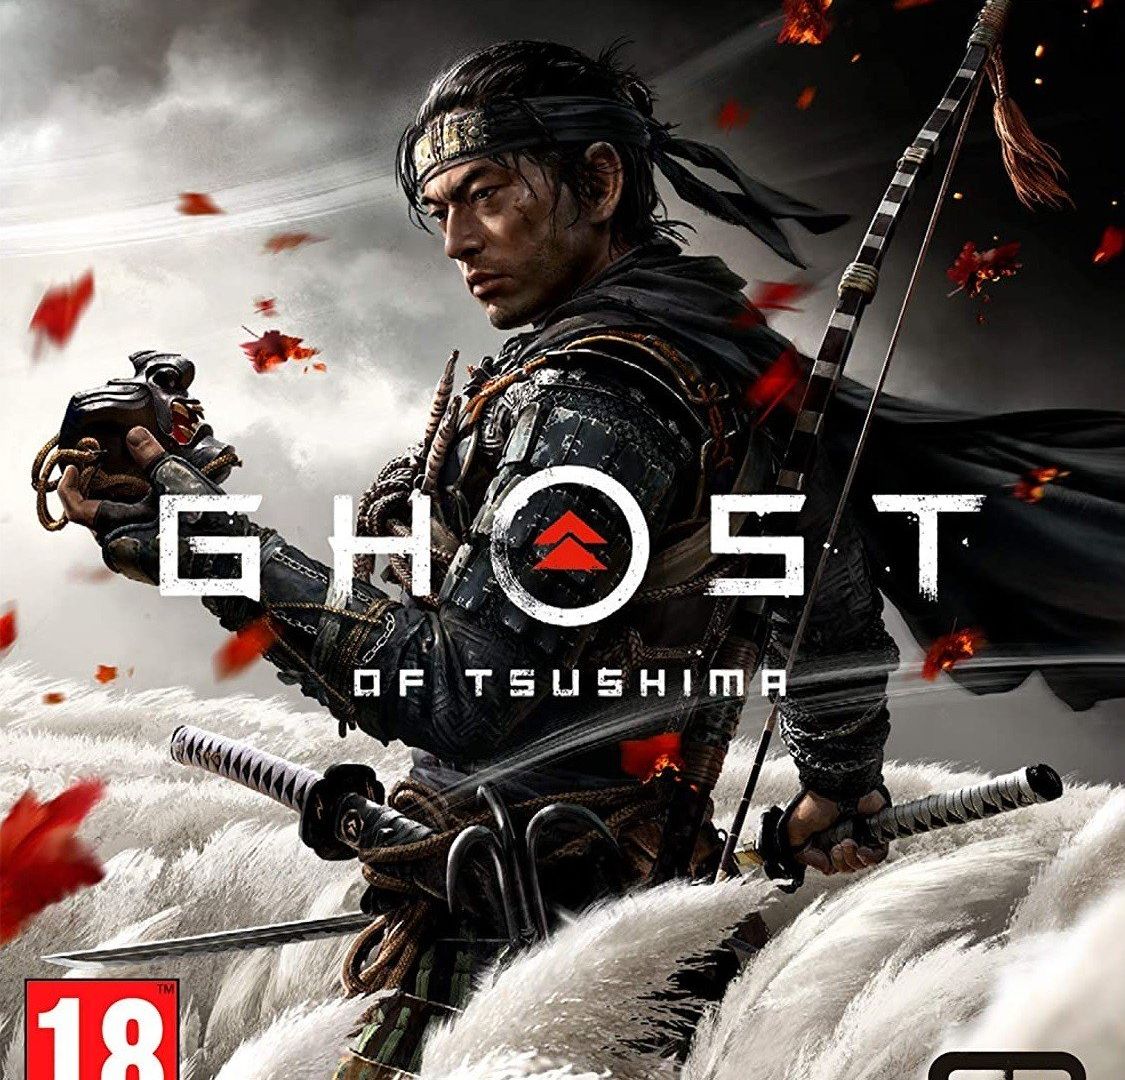 Avis et critiques du jeu Ghost of Tsushima sur PS4